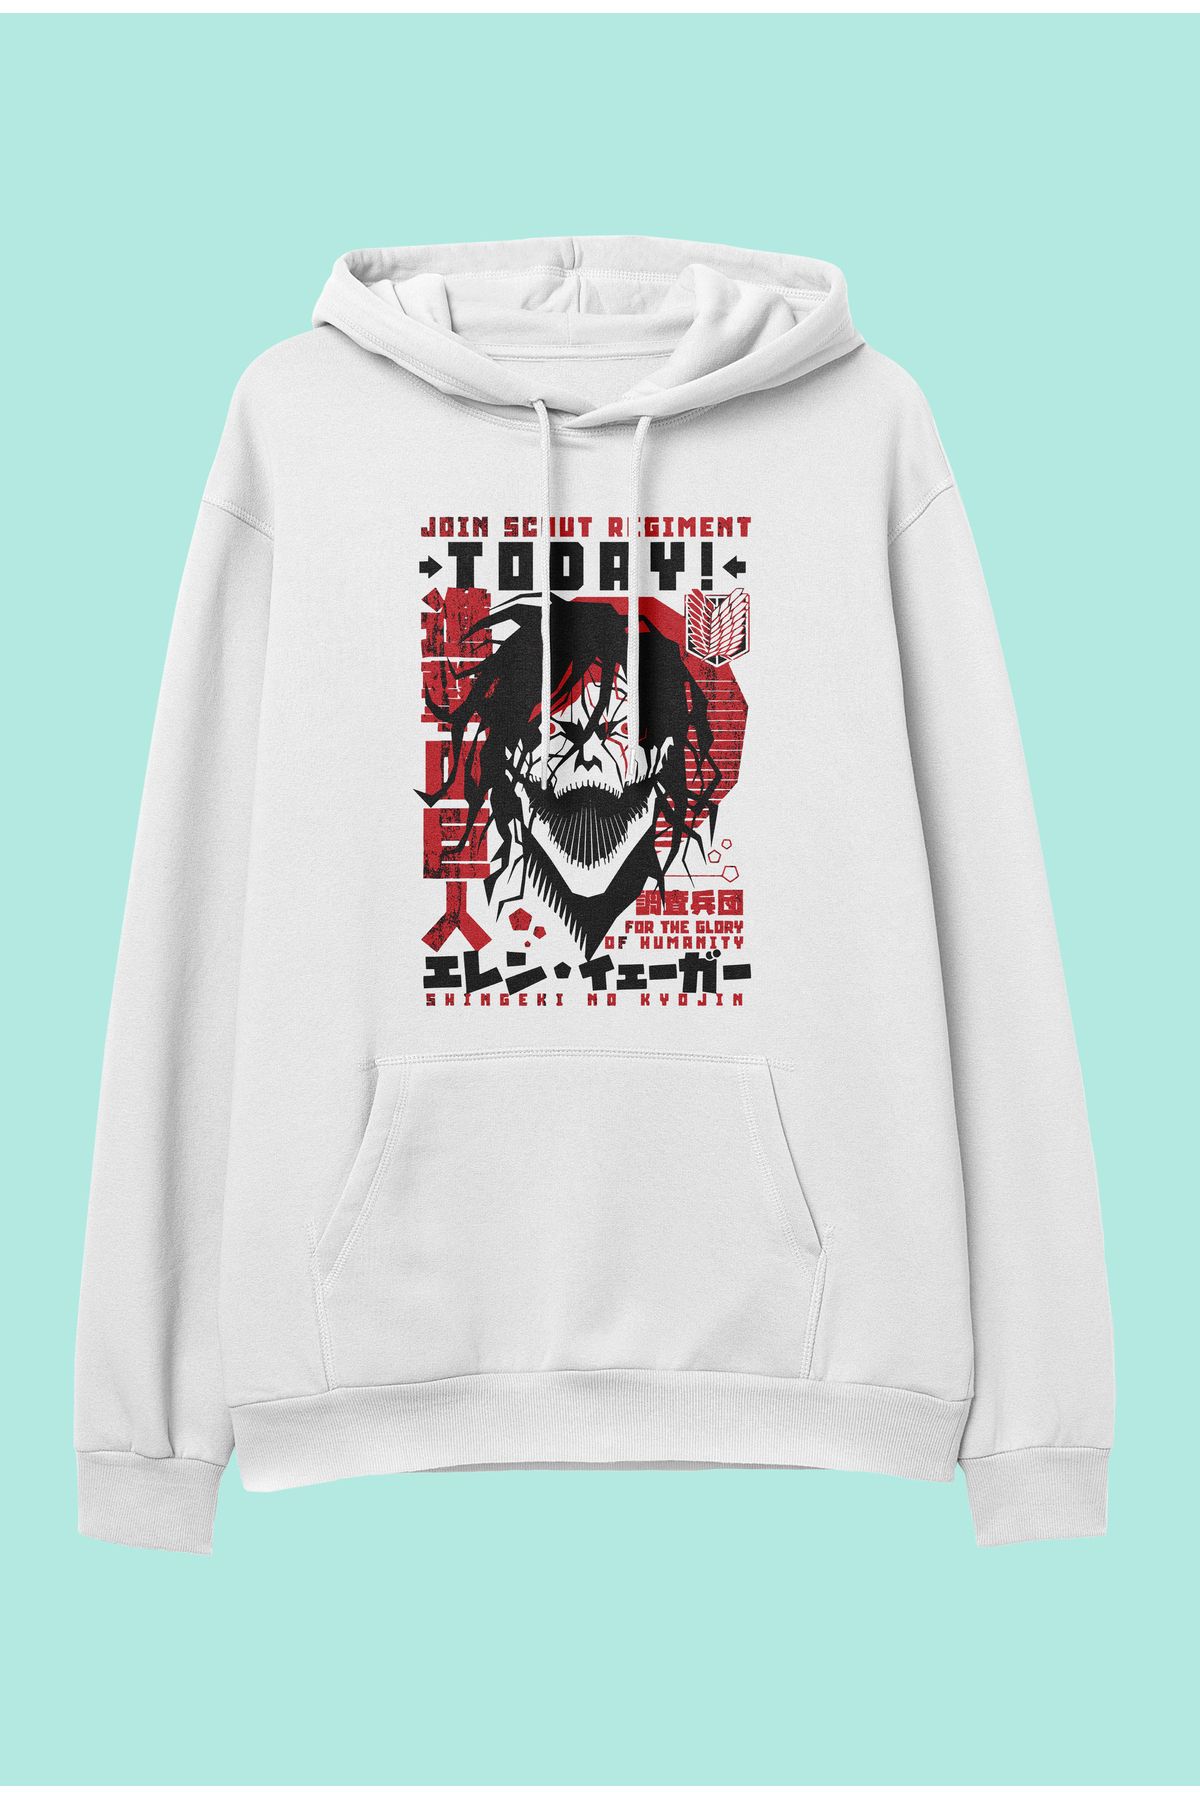 ZOKAWEAR Unisex Attack on Titan Eren Yeager Anime Baskılı kapüşonlu sweatshirt hoodie